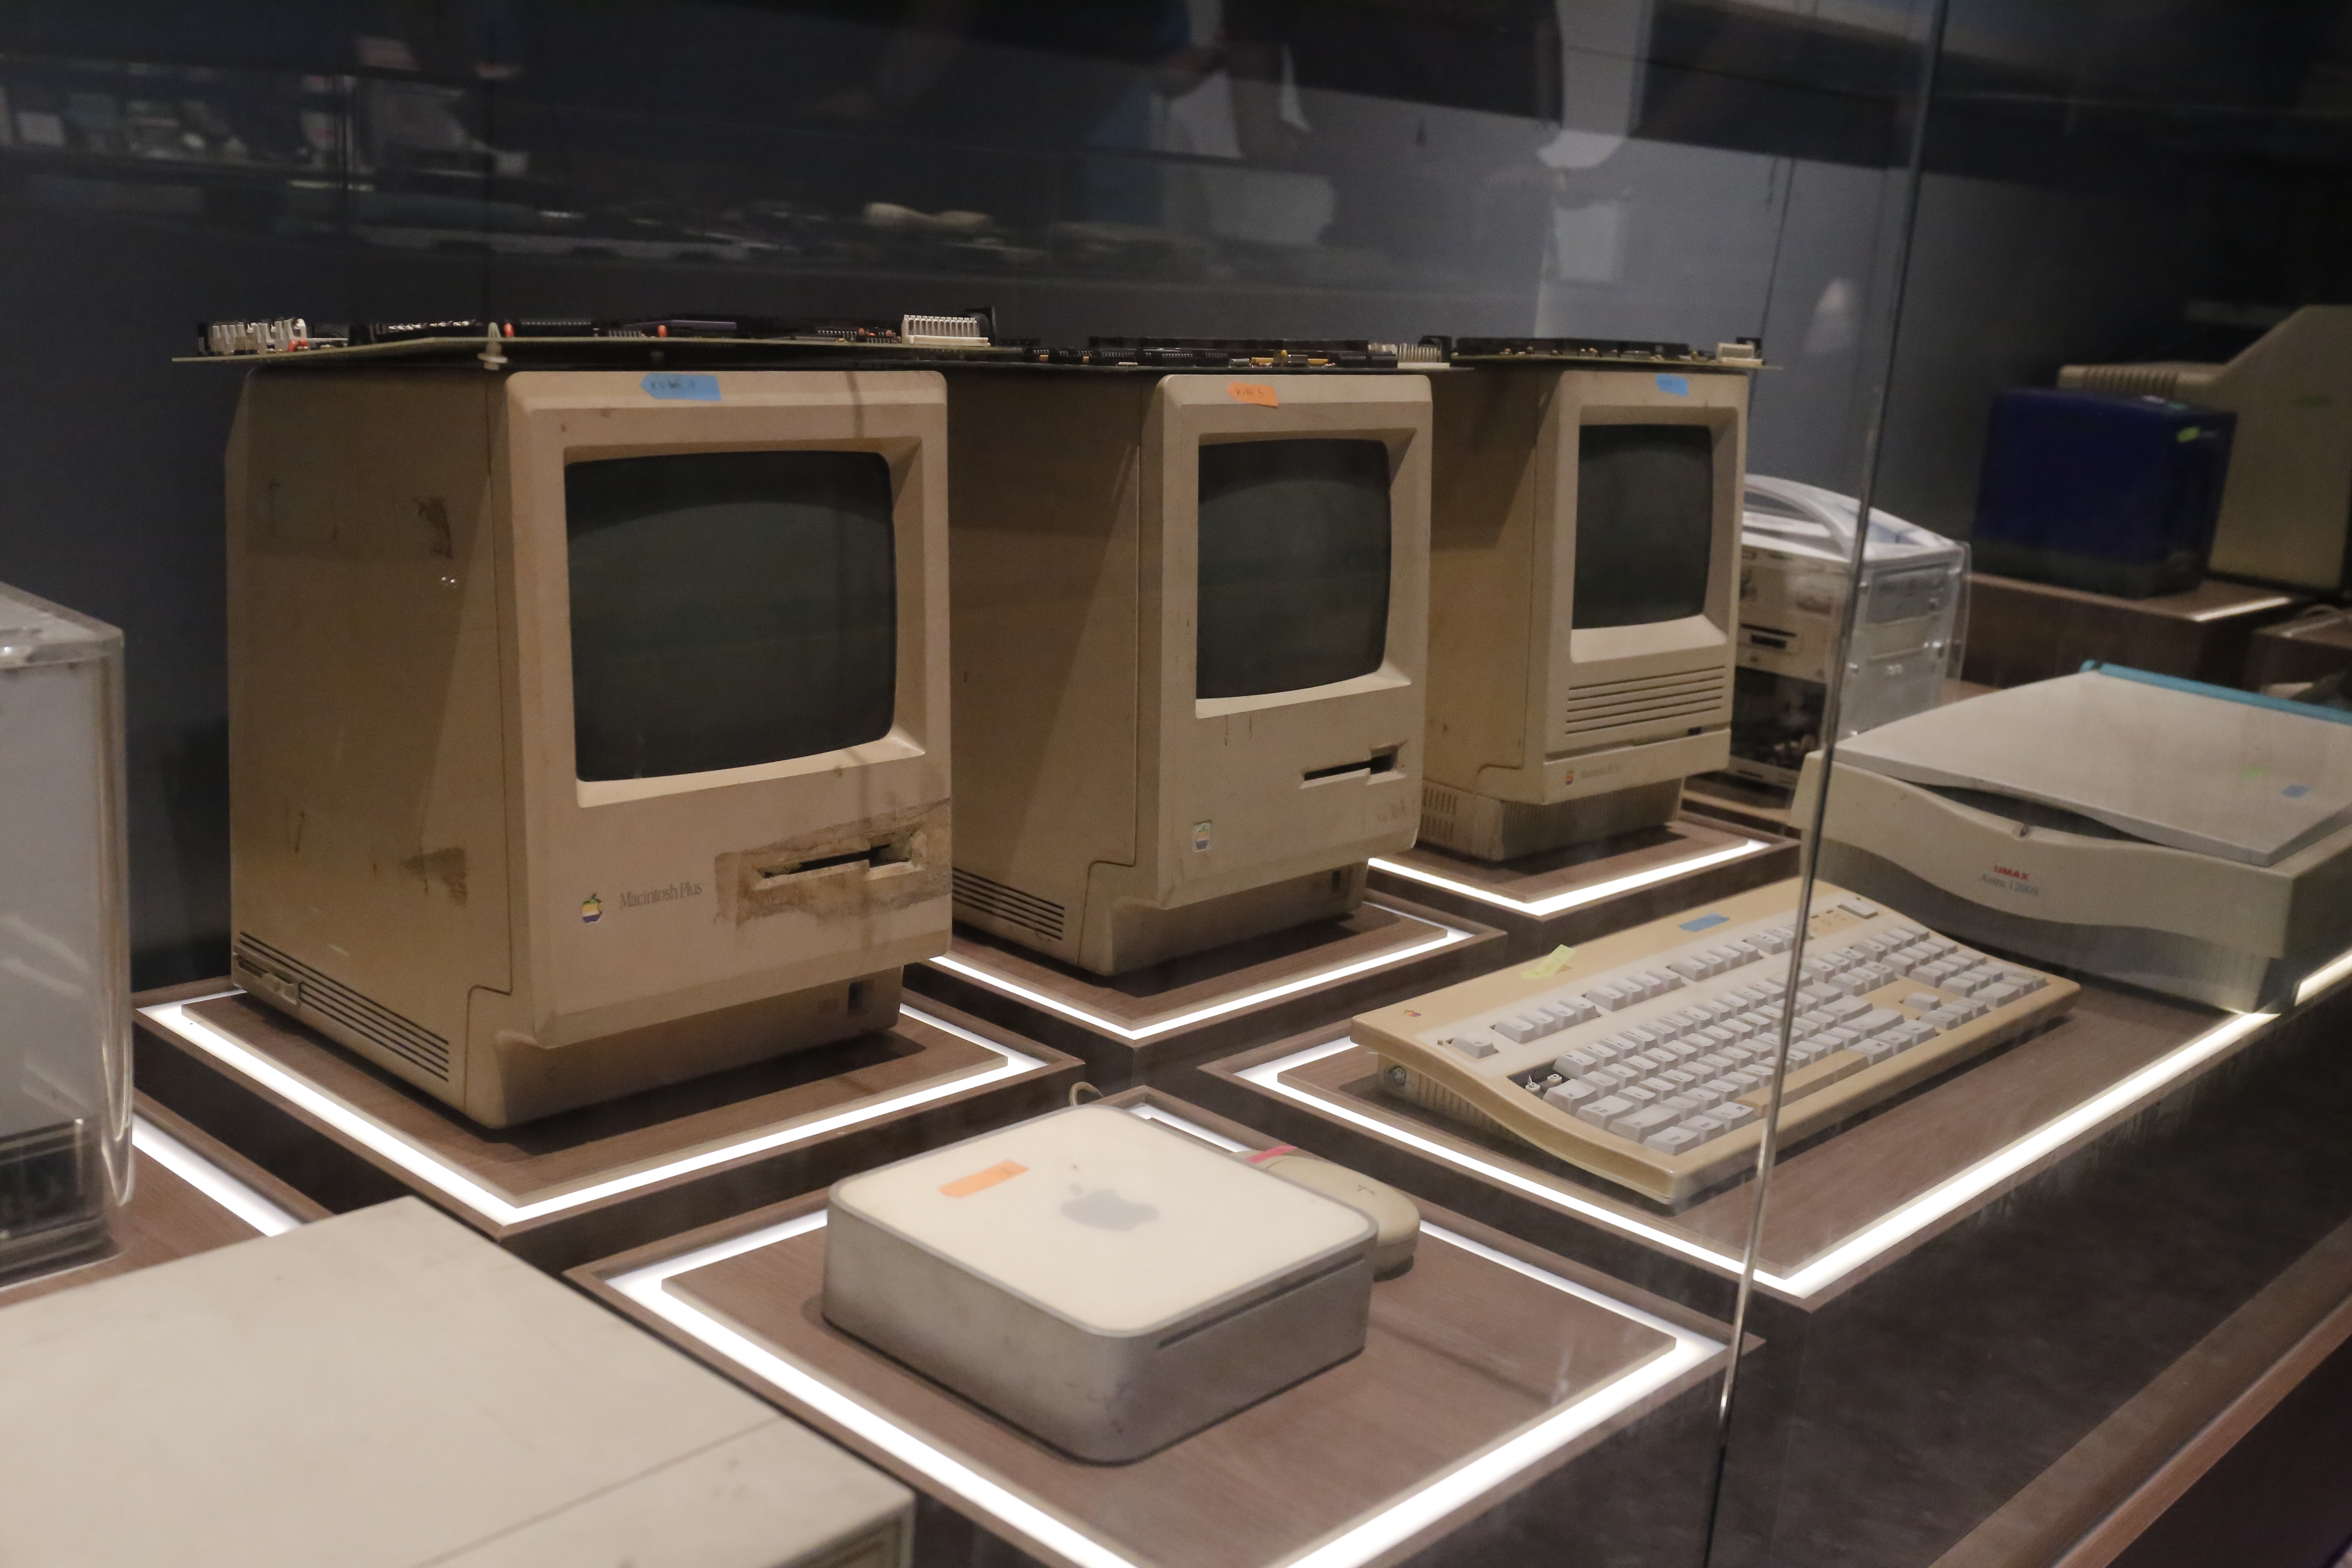 Các máy tính Macintosh những năm 1984, 1986, 1988 của hãng Apple. Theo TS. Công, “dòng Mac này là một cuộc cách mạng, cách mạng ở chỗ nó thay giao diện chữ bằng giao diện đồ họa, thay giao diện bàn phím bằng giao diện con chuột”. Với những chiếc máy tính này, nhóm của TS. Công đã sử dụng để làm những font chữ Việt đầu tiên.